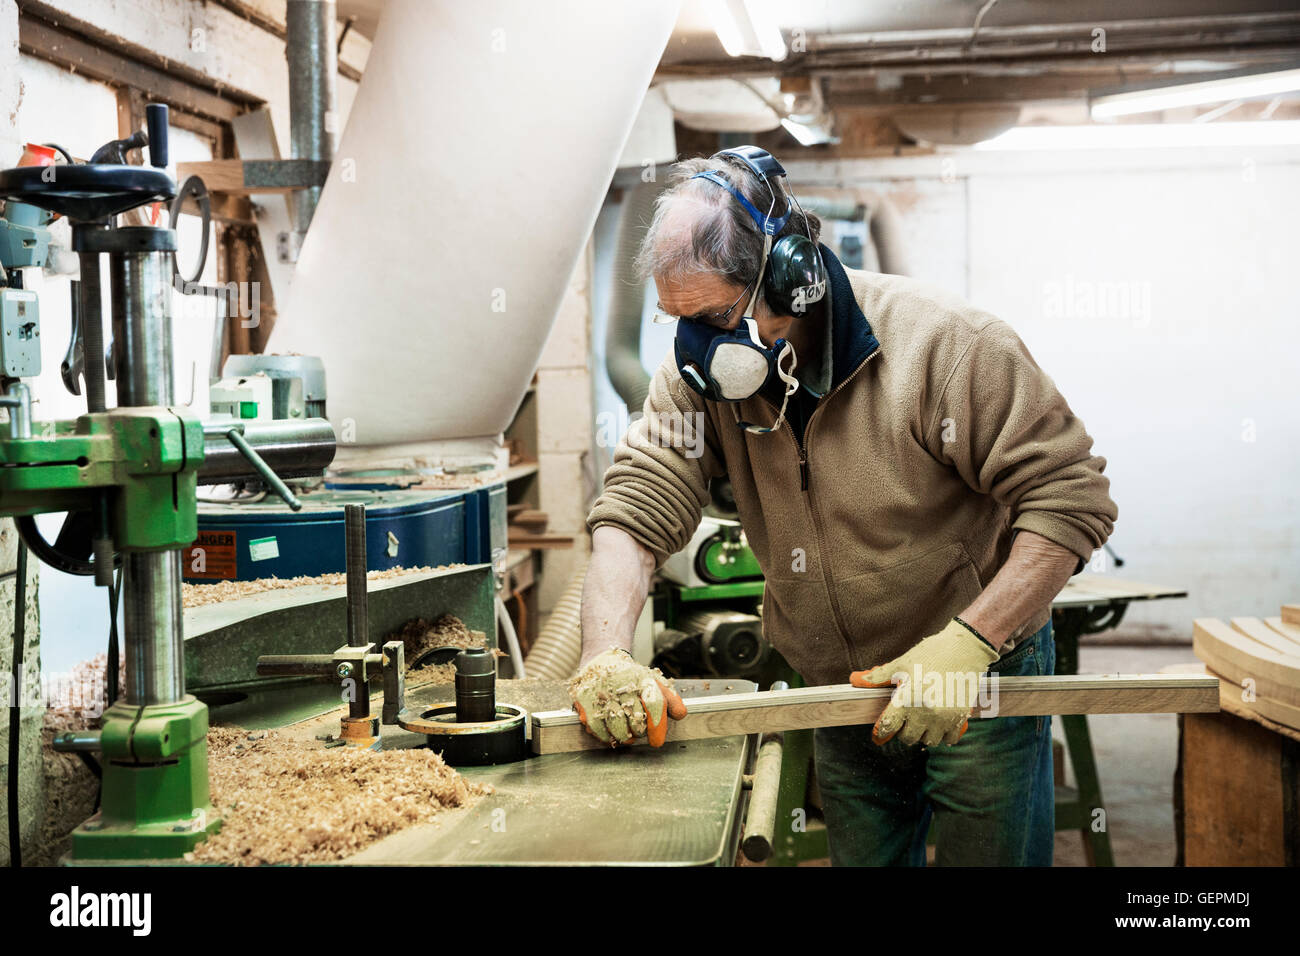 Mann stehend in einer Tischlerei, trägt einen Atemschutz und Gehörschutz,  arbeitet an einem Stück Holz Stockfotografie - Alamy